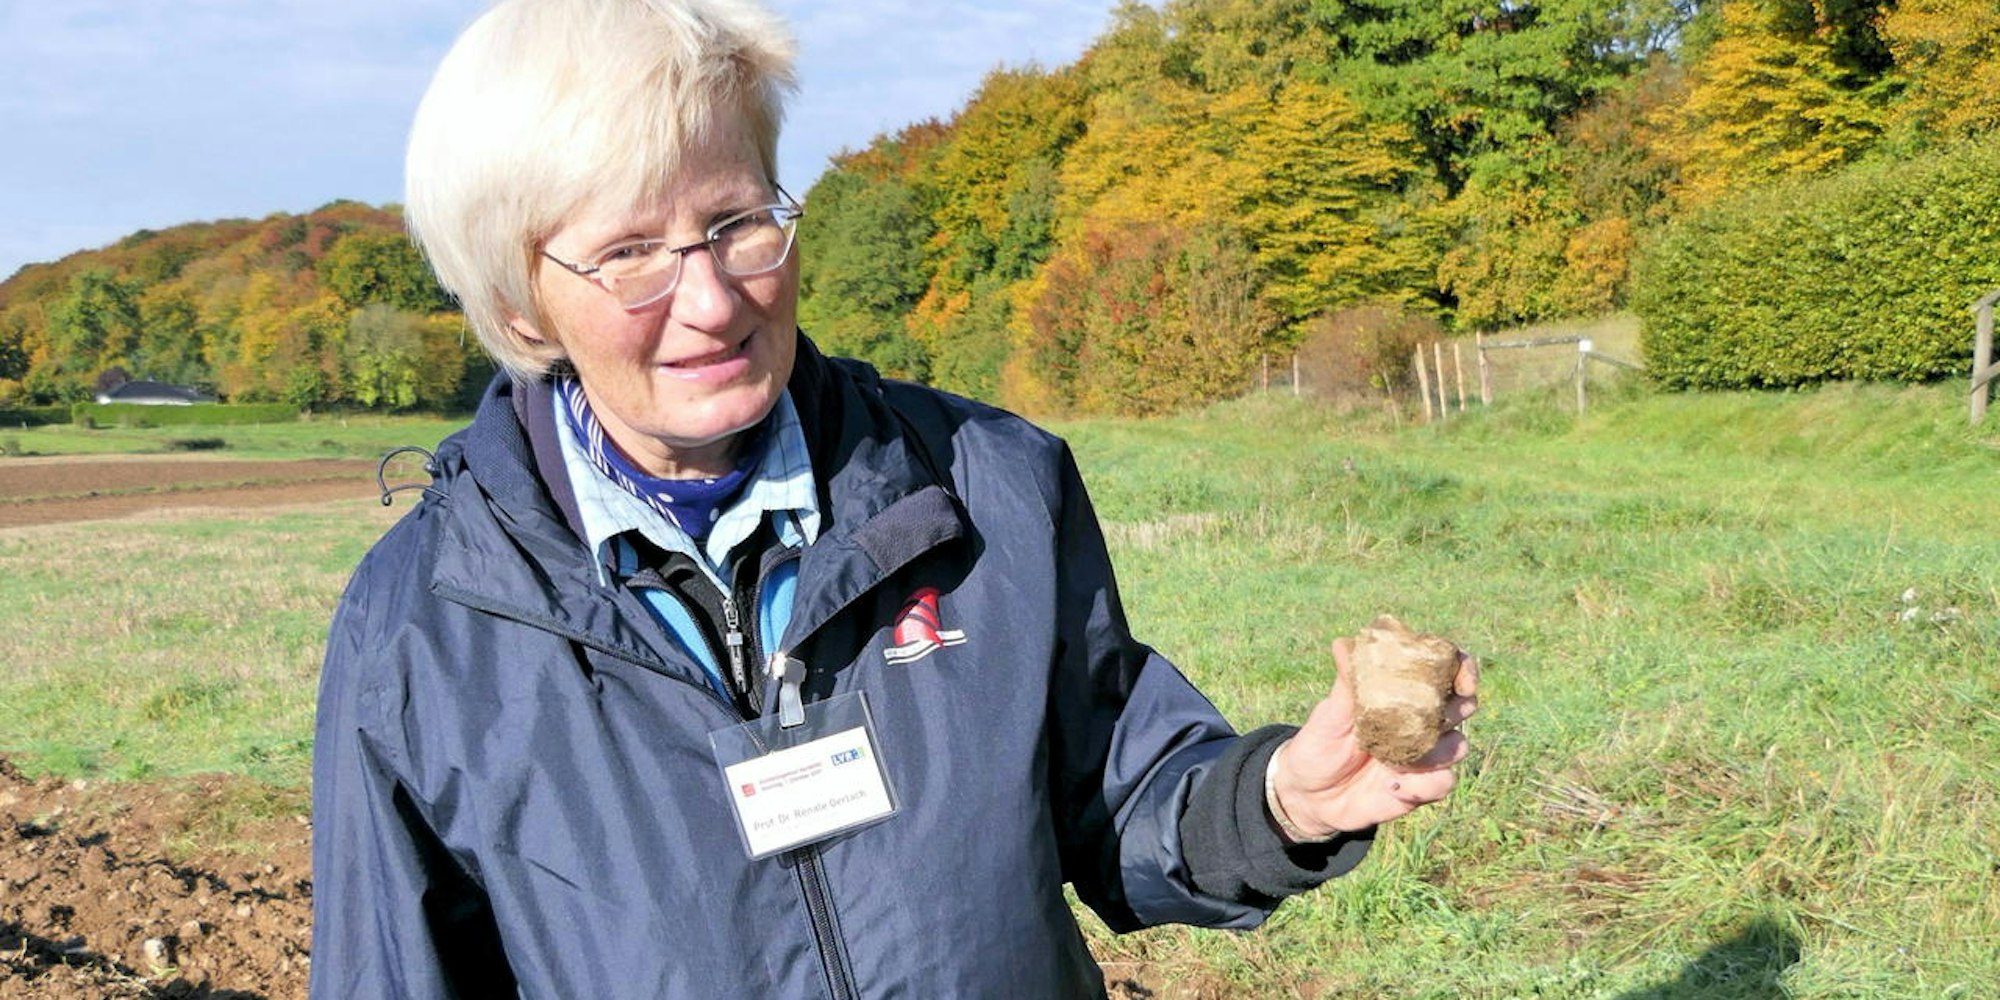 Das Fossil einer Runzelkoralle zeigte Prof. Dr. Renate Gerlach auf einem Feld bei Lindweiler.